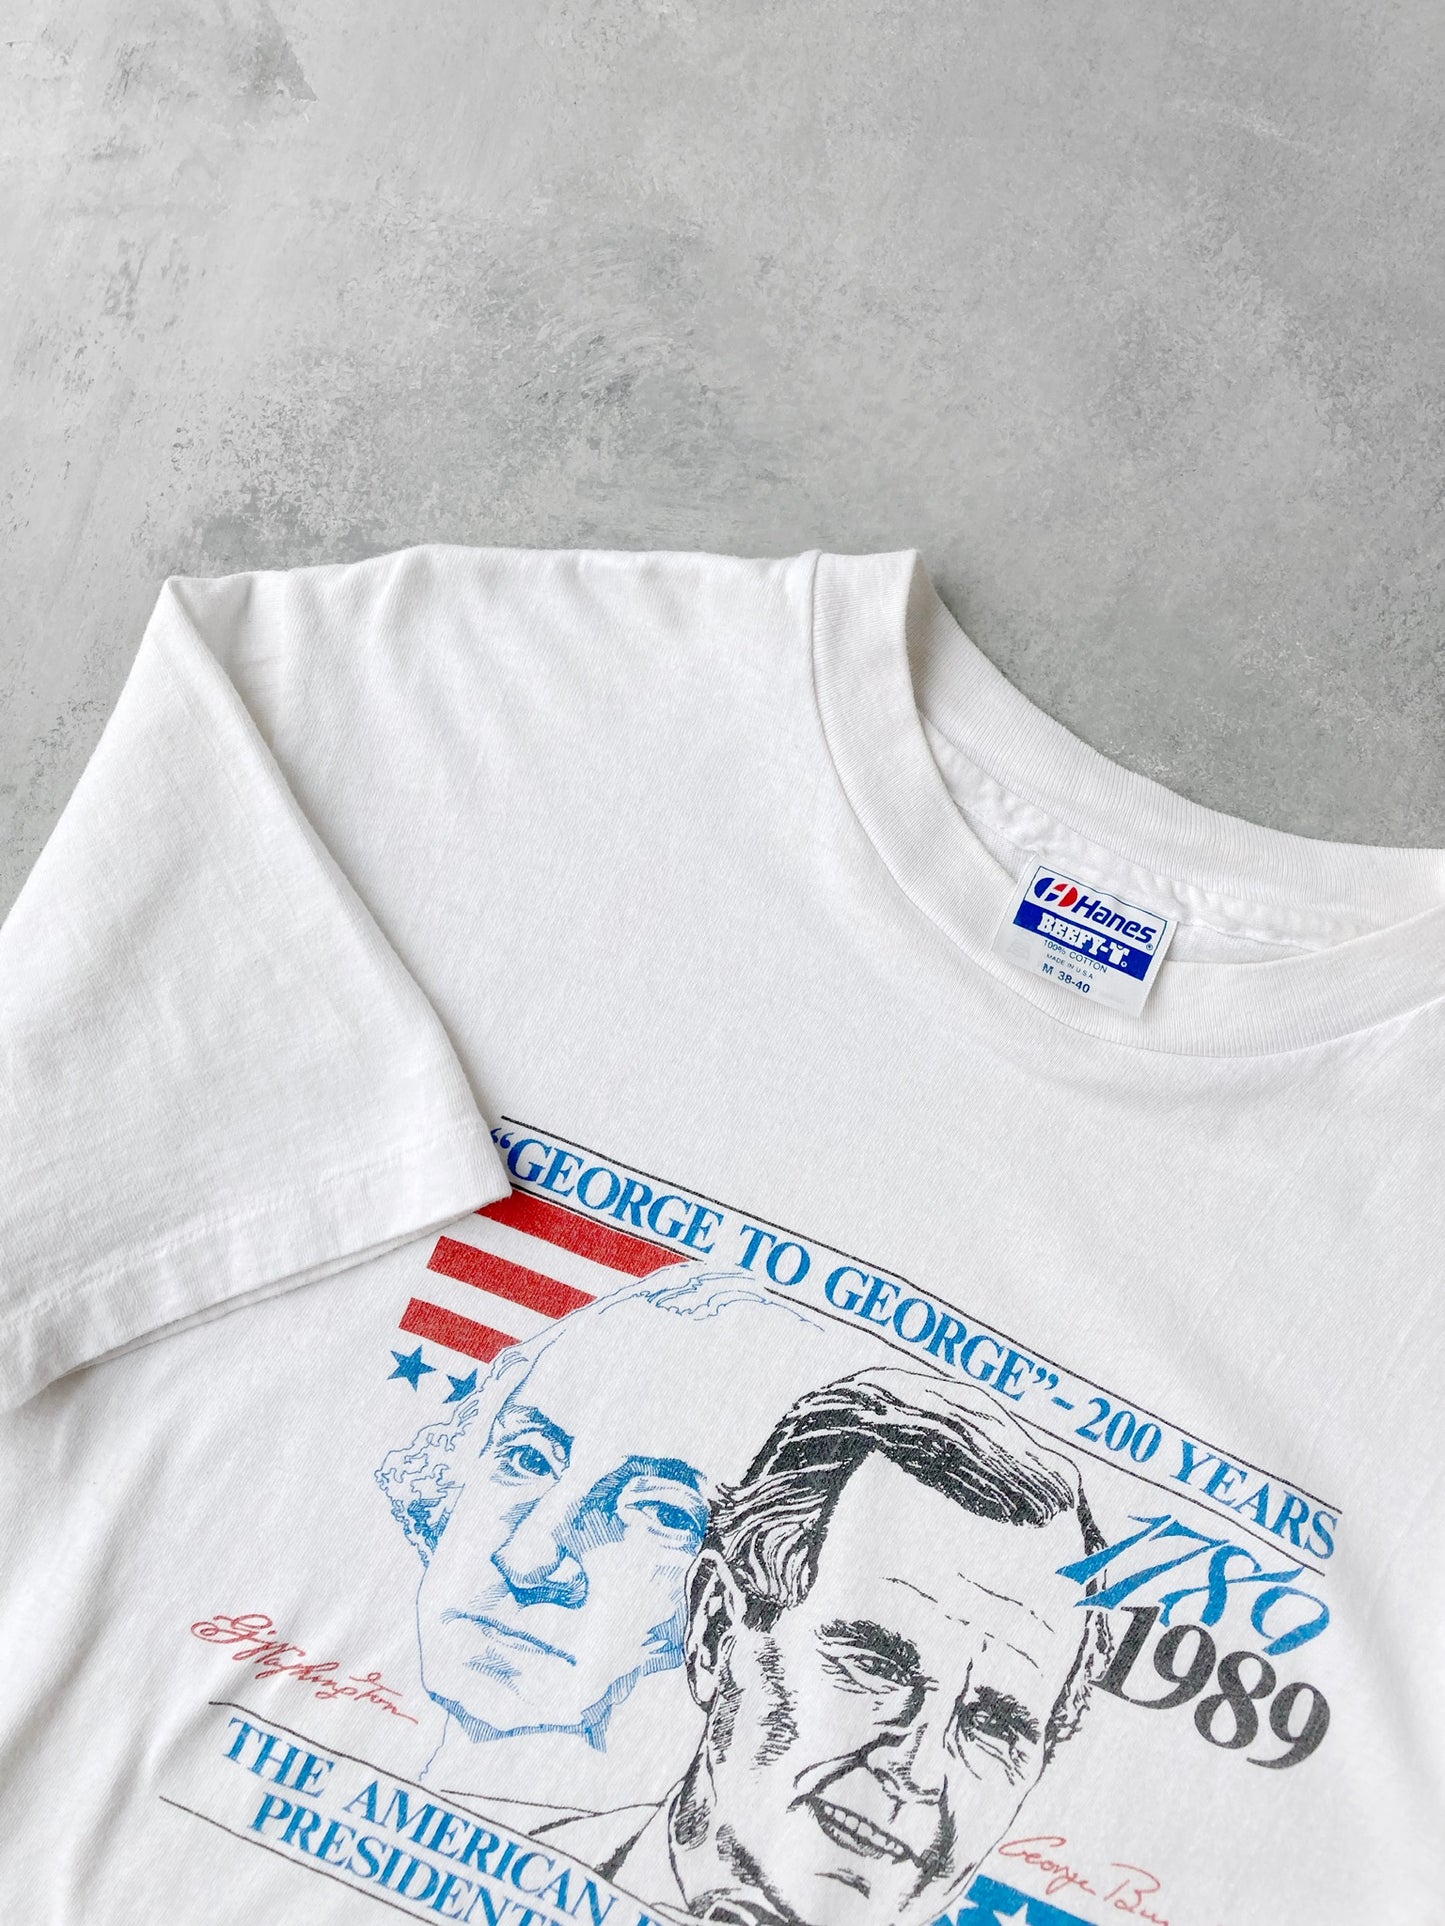 American Bicentennial Presidential Inaugural T-Shirt '89 - Medium